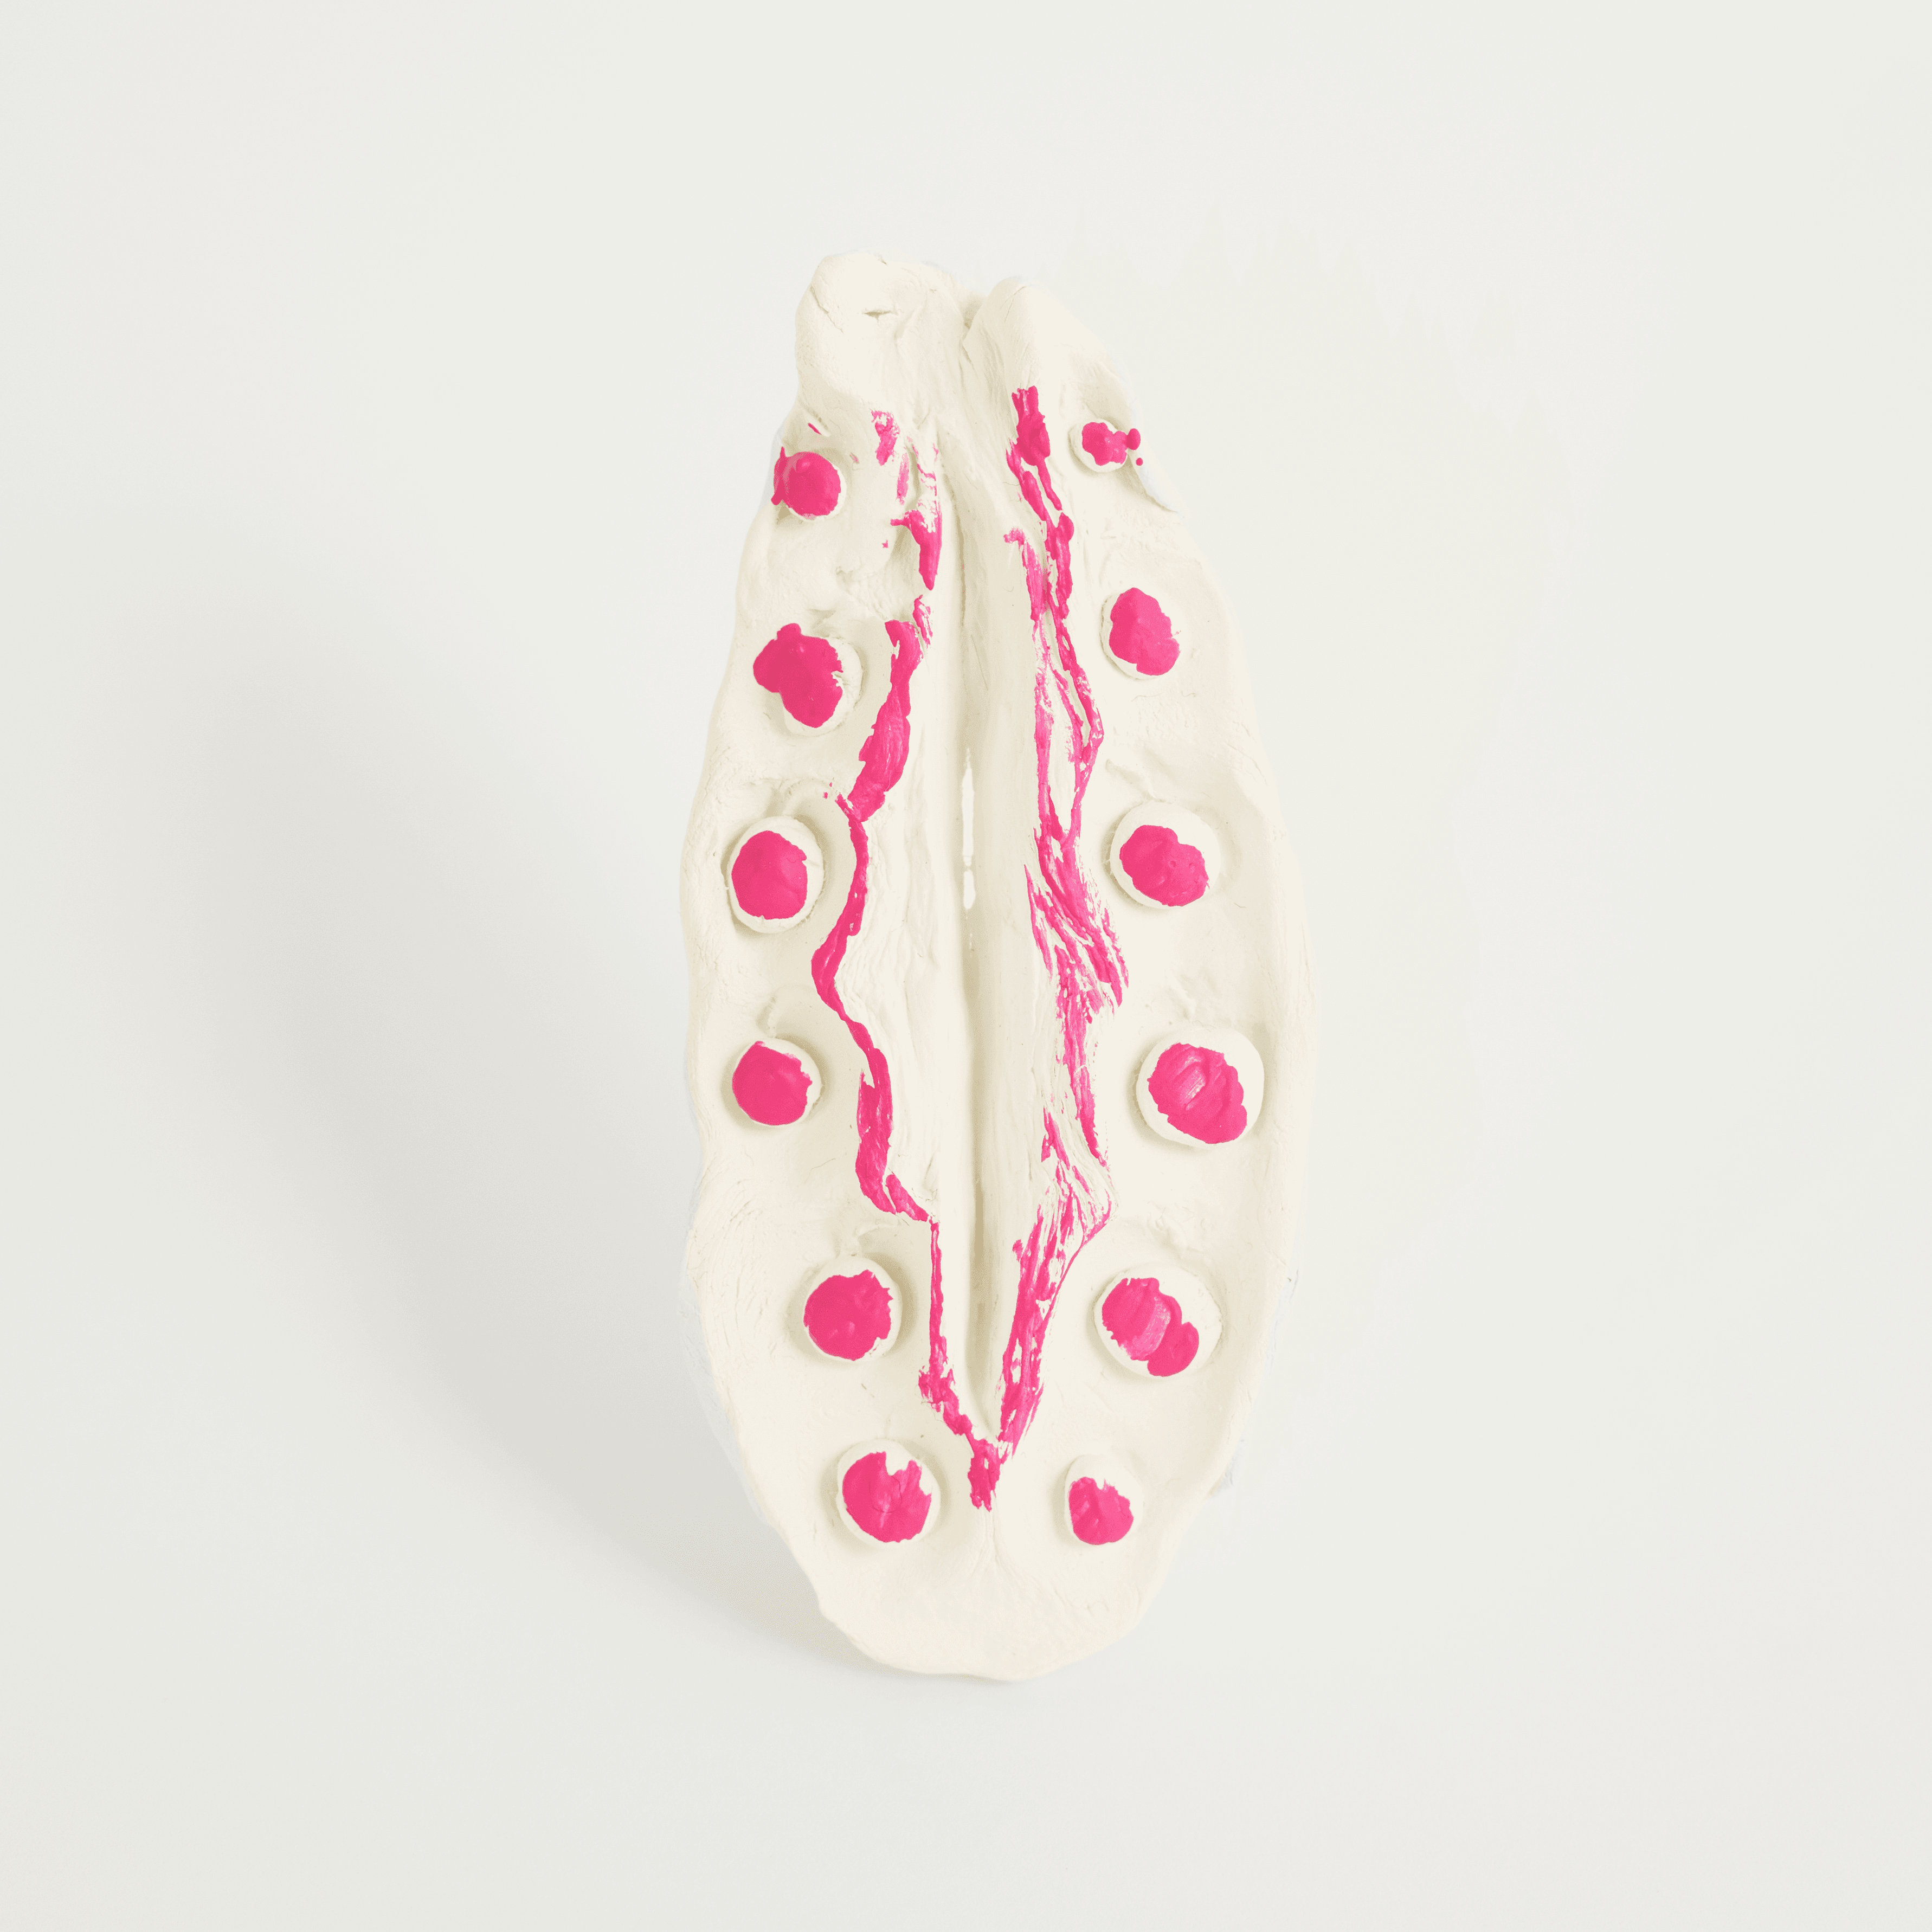 Vagina NFT #004